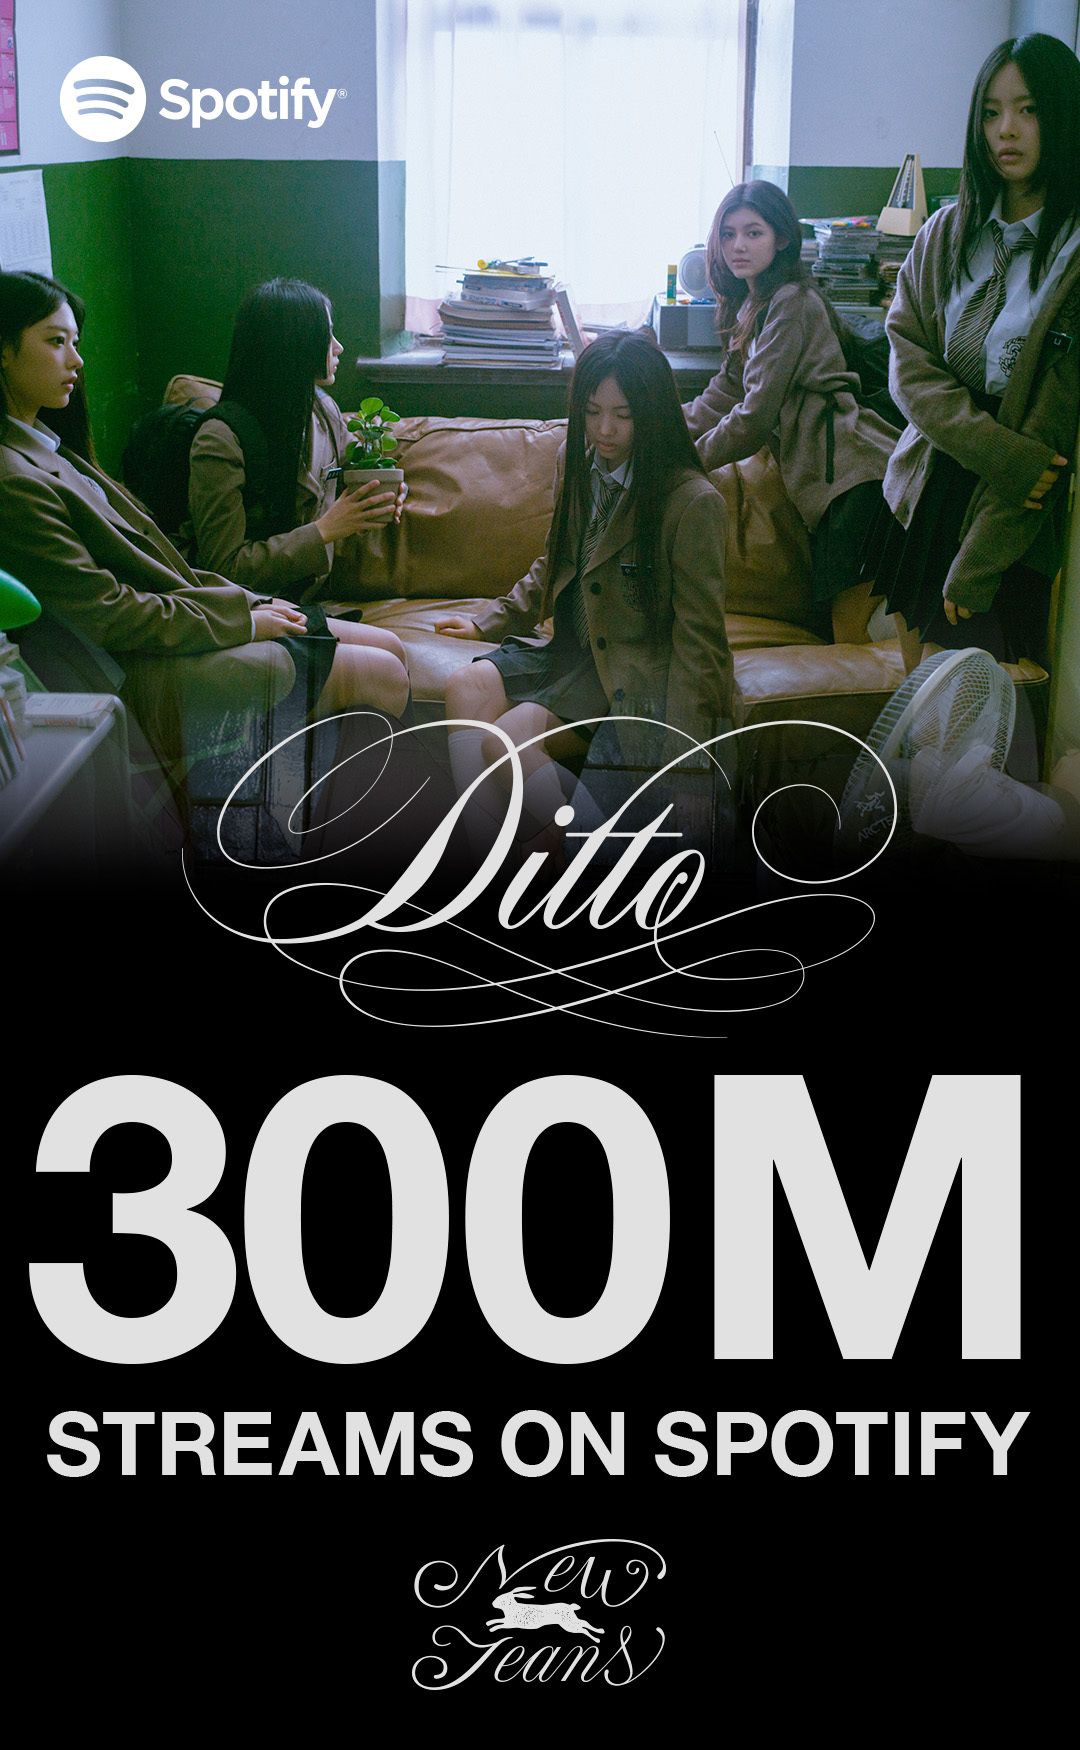 NewJeansの楽曲『Ditto』　3億ストリーミングを突破